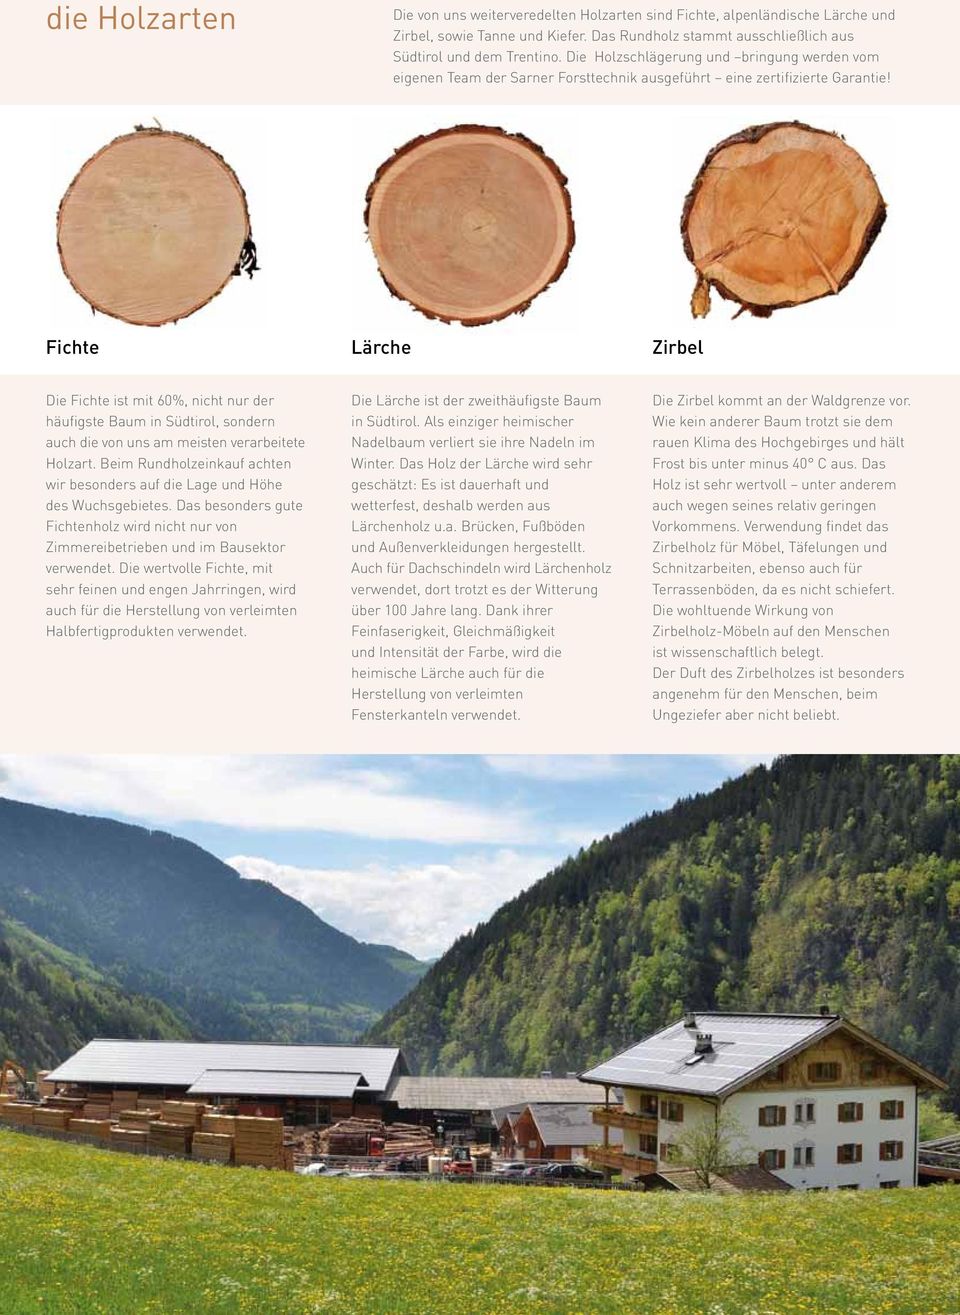 Fichte Lärche Zirbel Die Fichte ist mit 60%, nicht nur der häufigste Baum in Südtirol, sondern auch die von uns am meisten verarbeitete Holzart.